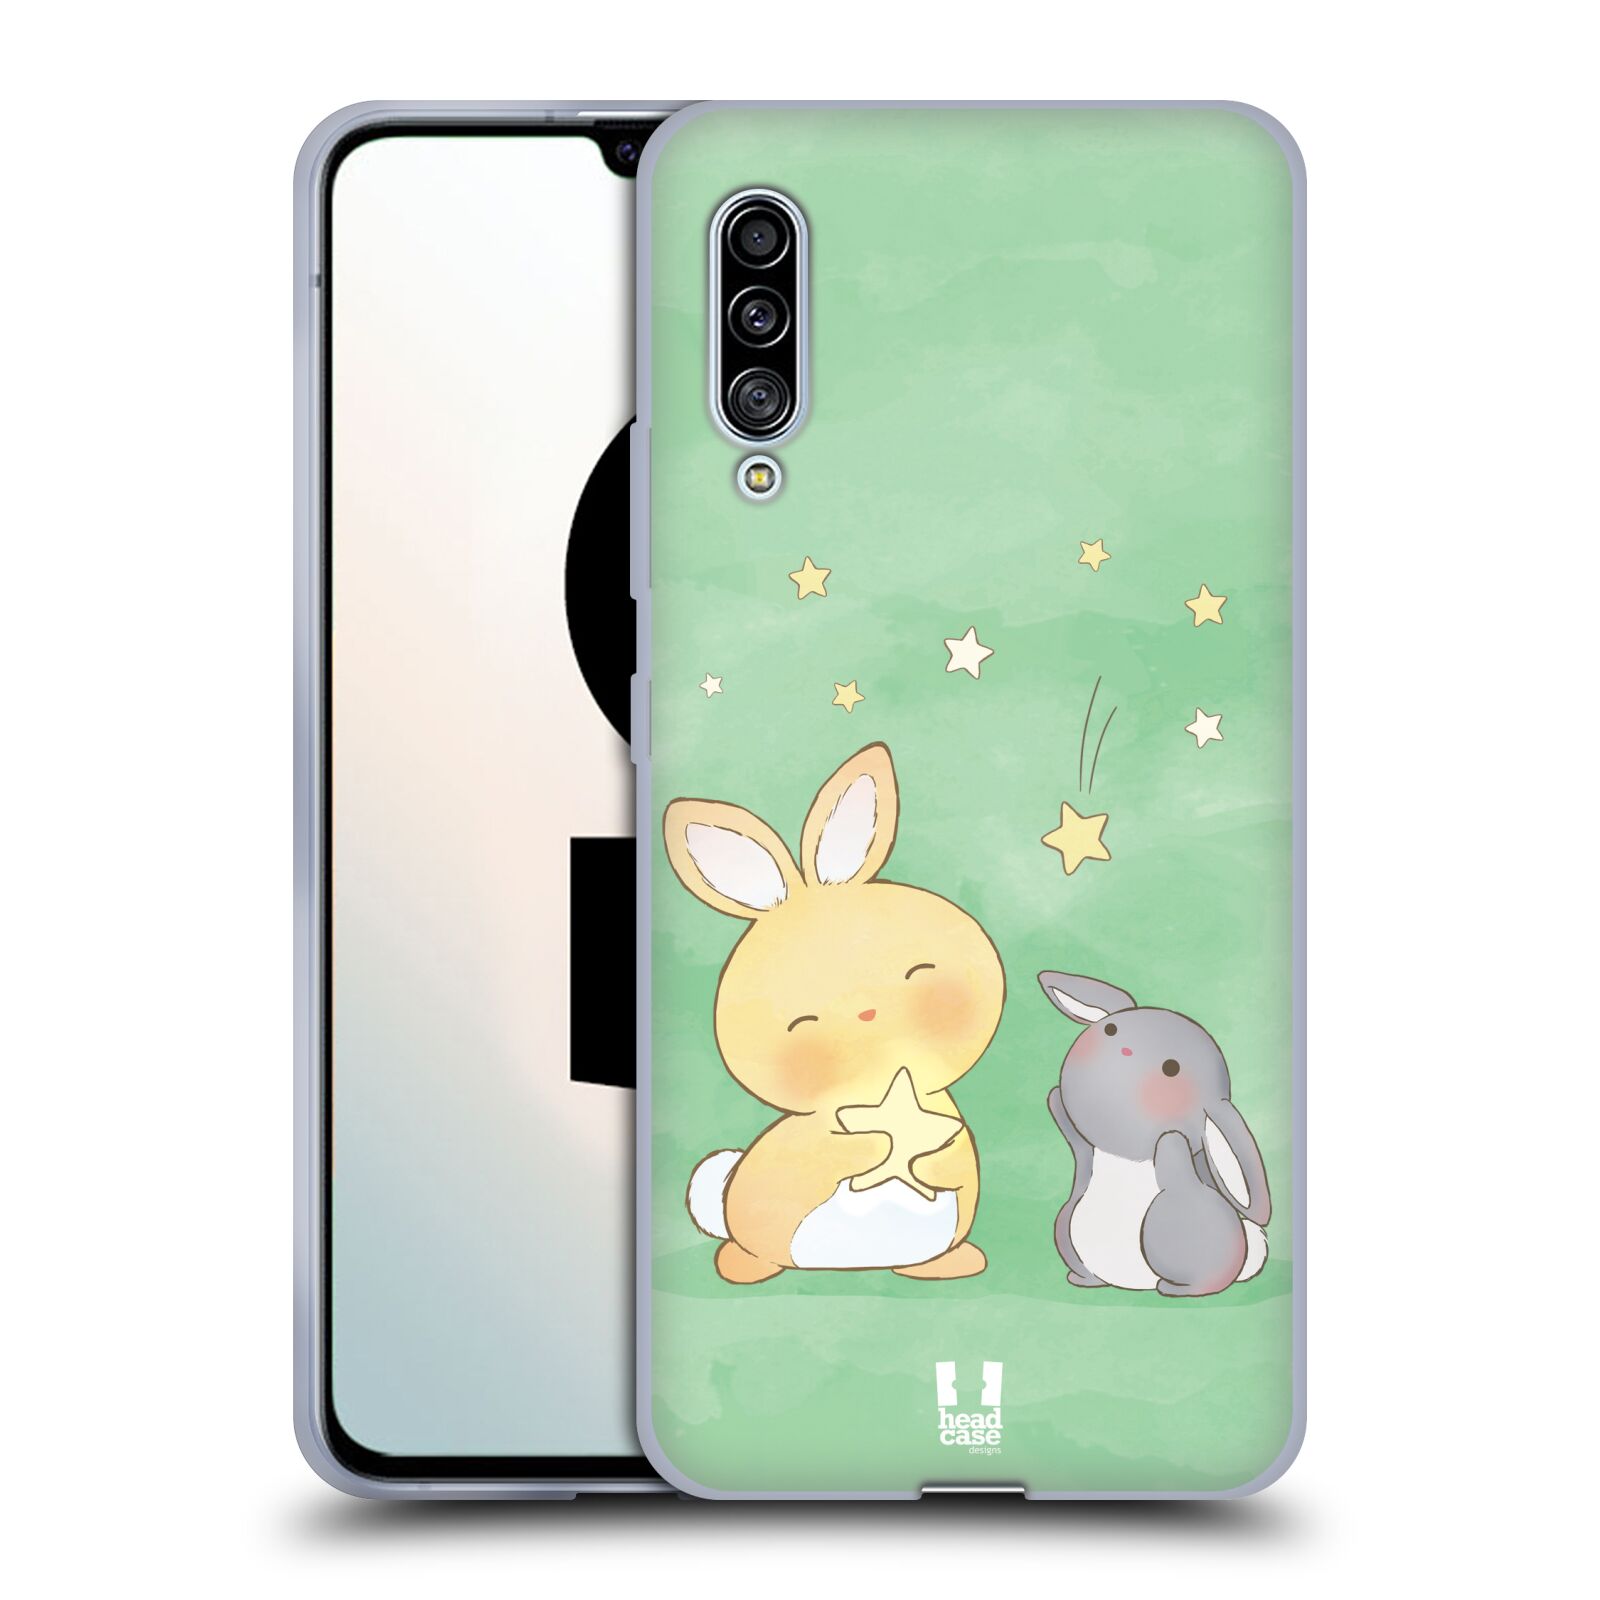 Plastový obal HEAD CASE na mobil Samsung Galaxy A90 5G vzor králíček a hvězdy zelená